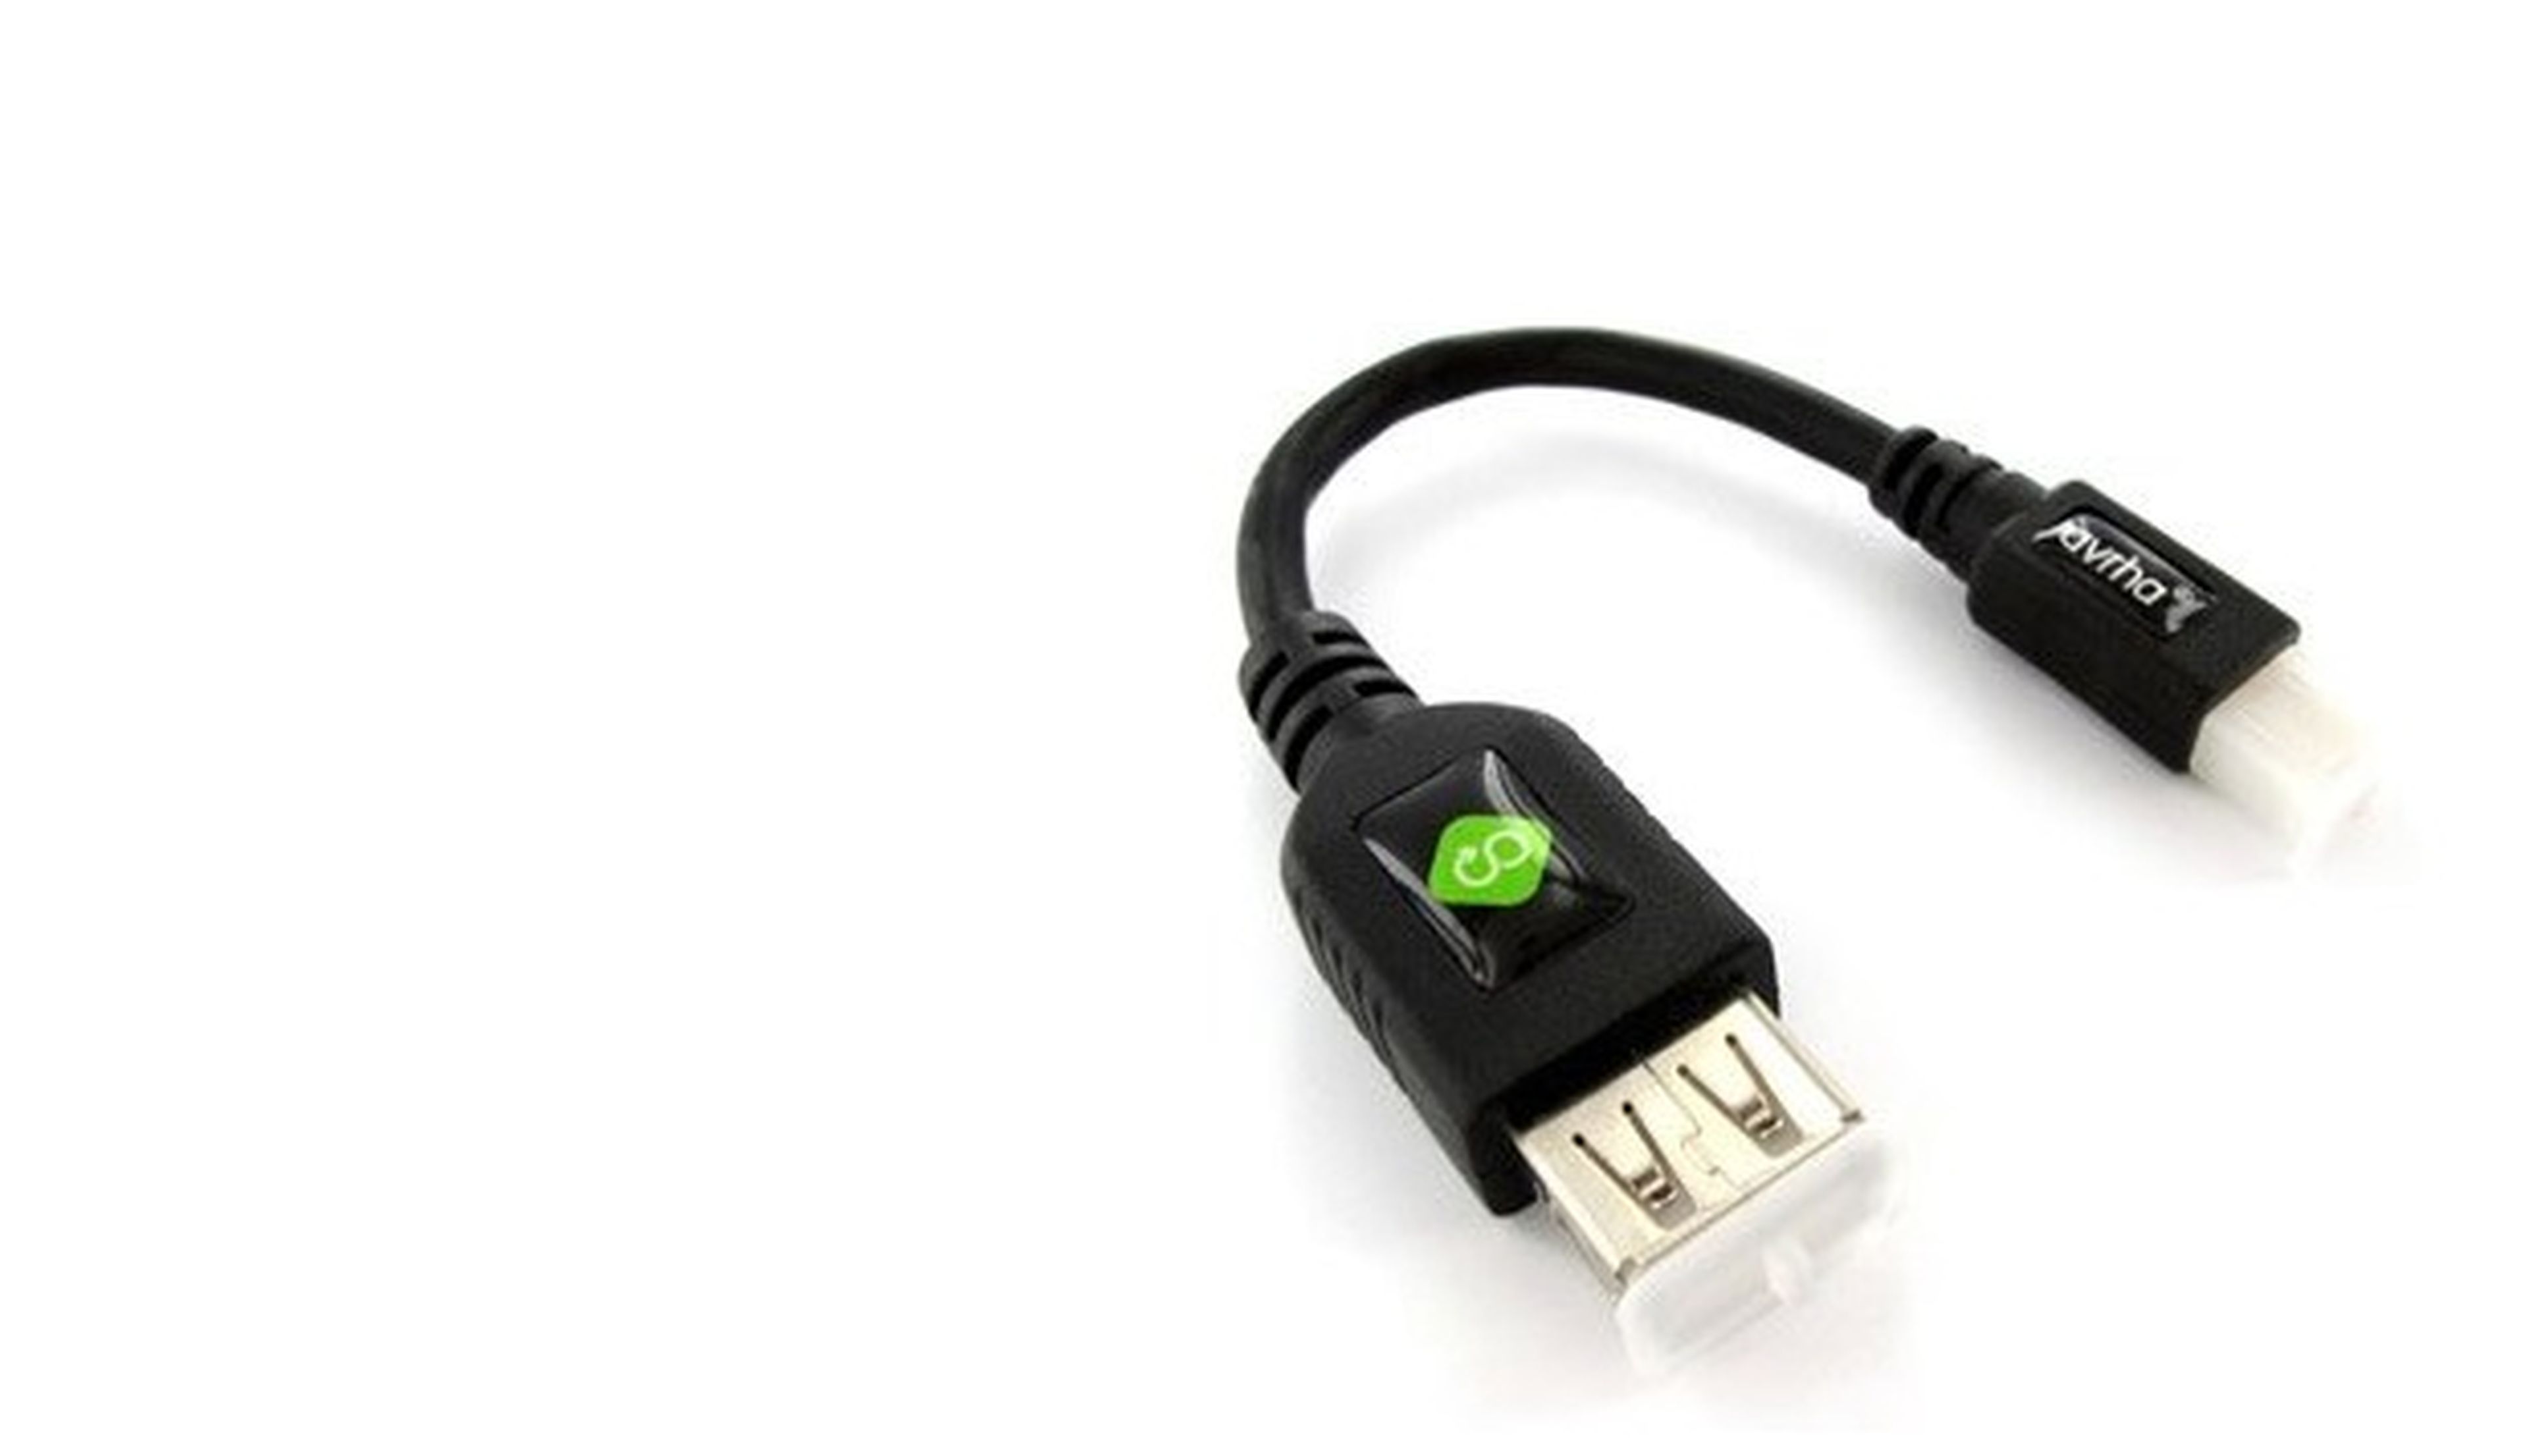 Usa un cable USB OTG para conectar dispositivos USB a tu smartphone o tablet